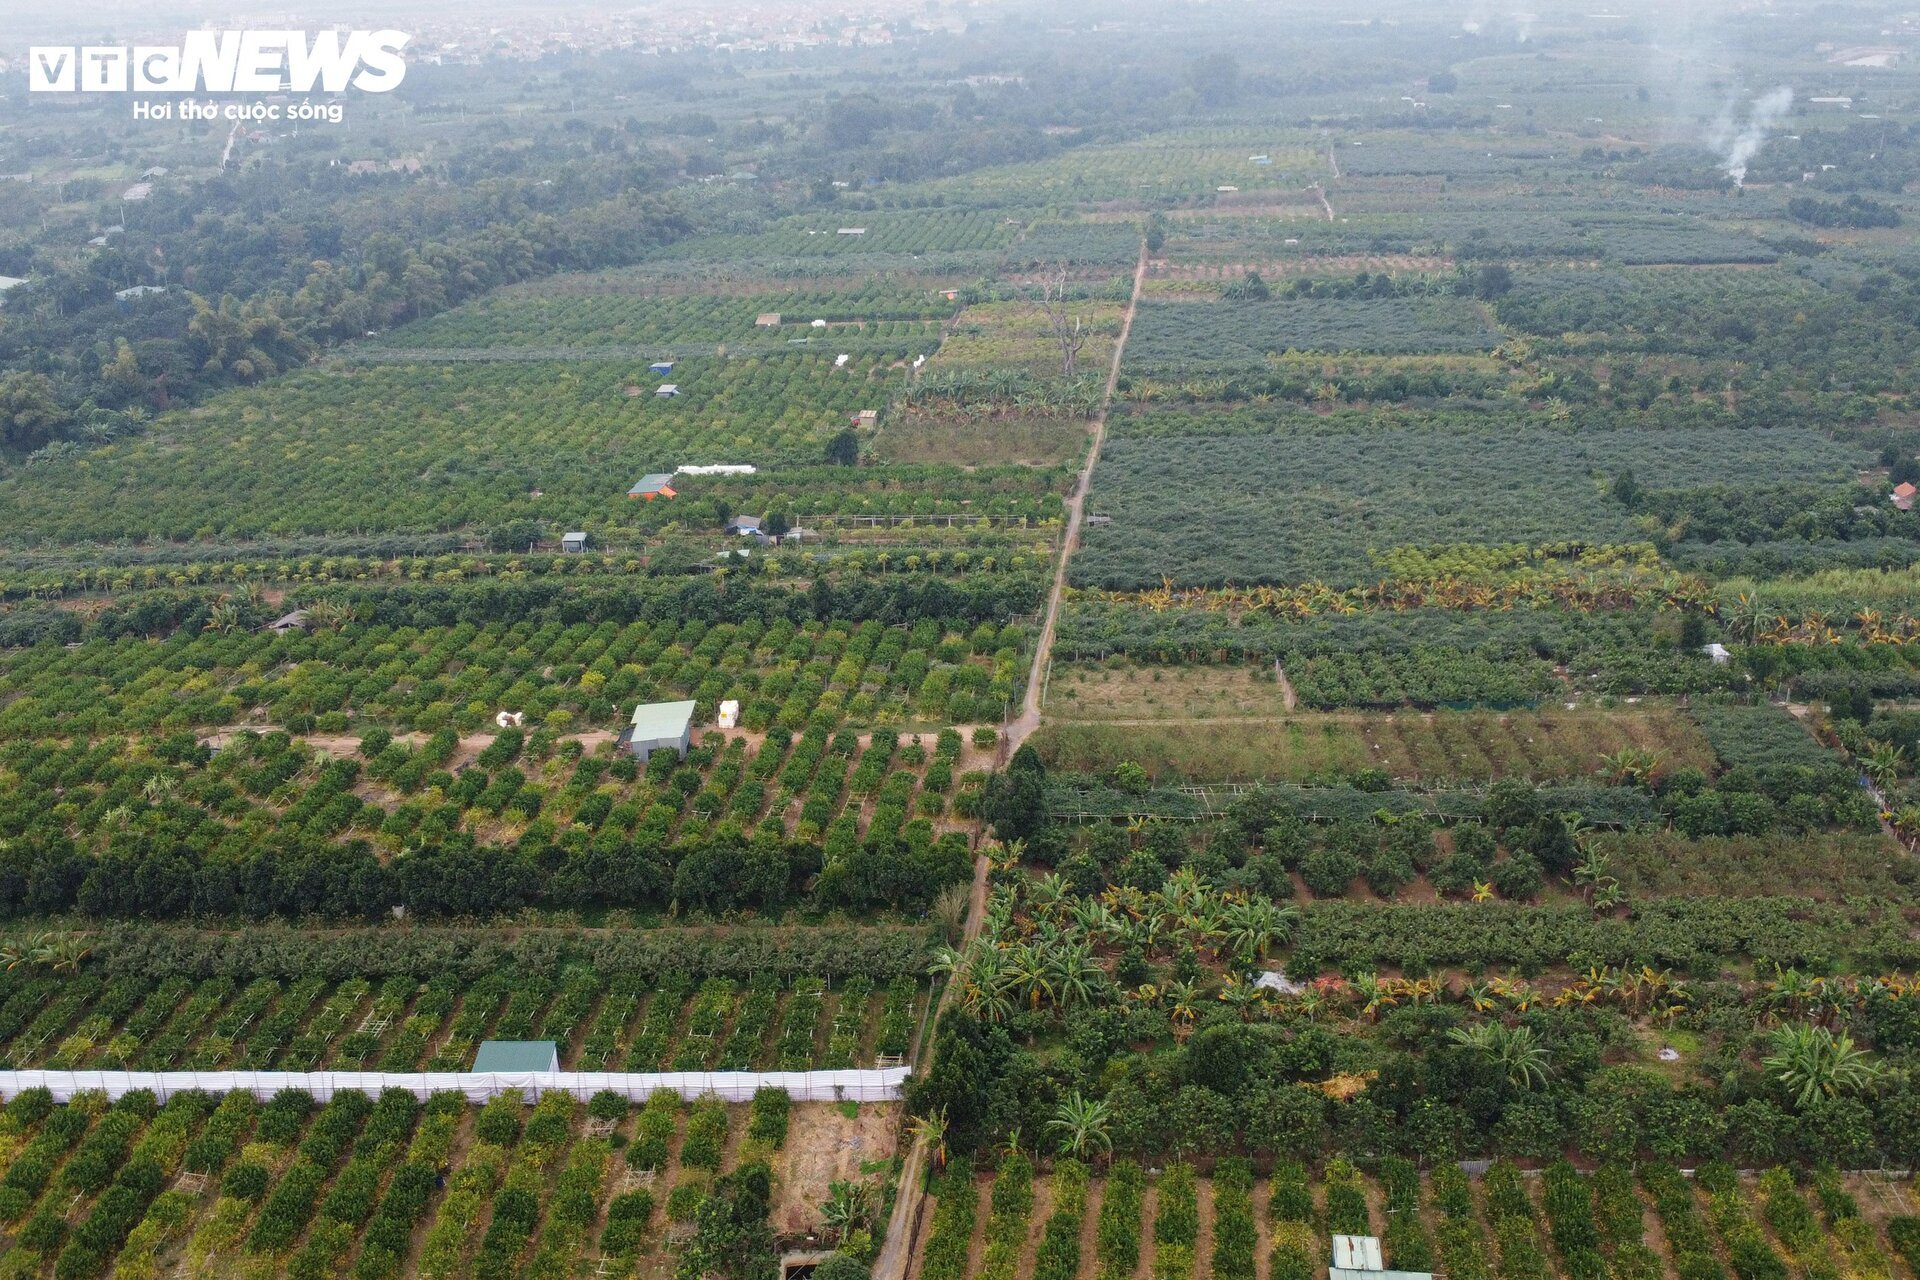 Tất bật thu hoạch, người dân trồng phật thủ ở Hà Nội bội thu - Ảnh 2.